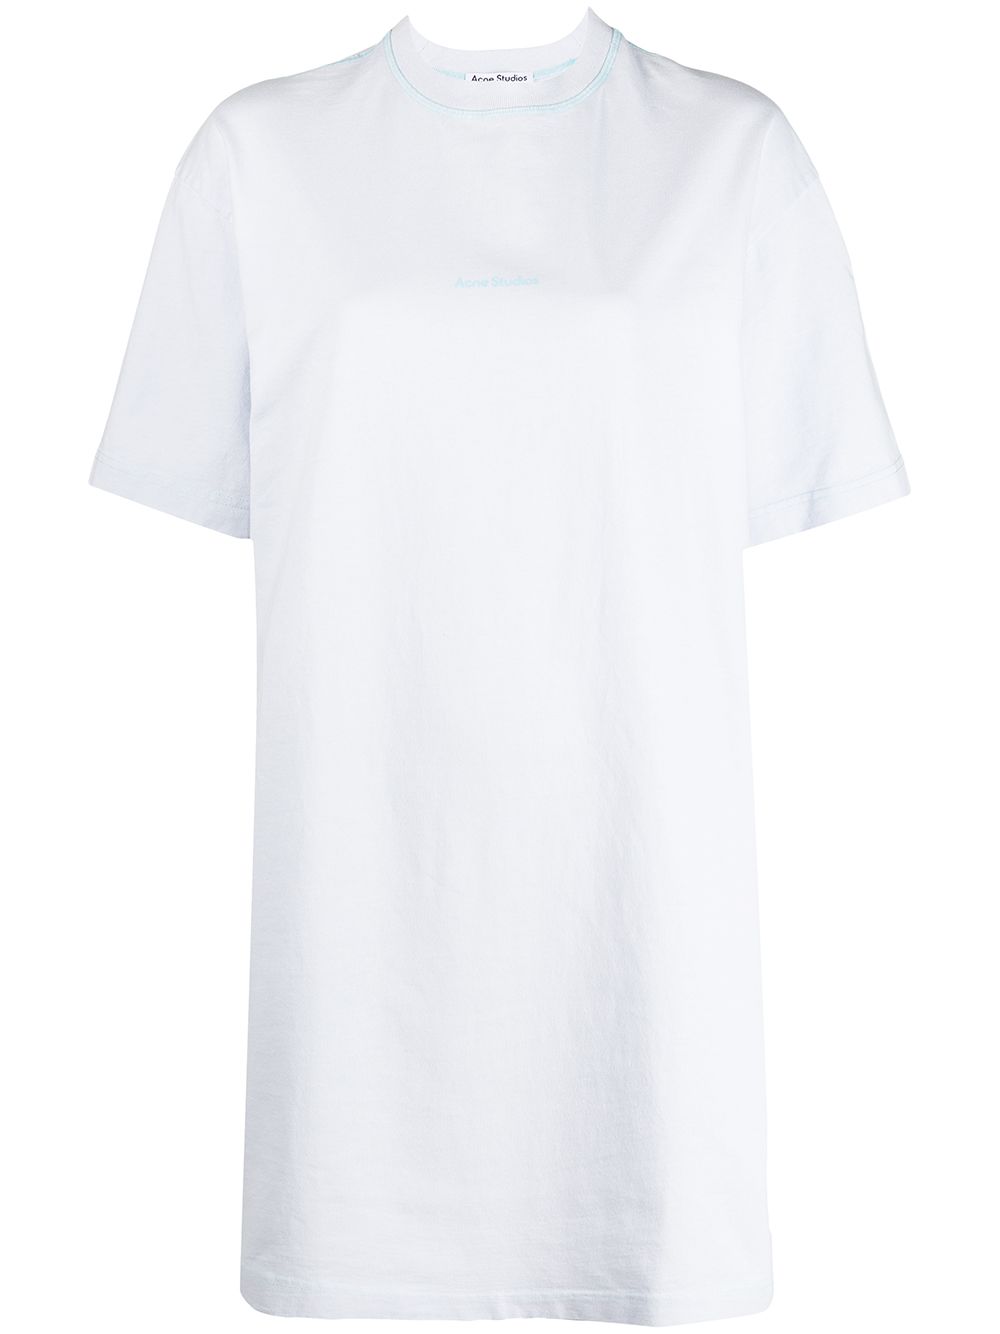 фото Acne studios платье-футболка с логотипом